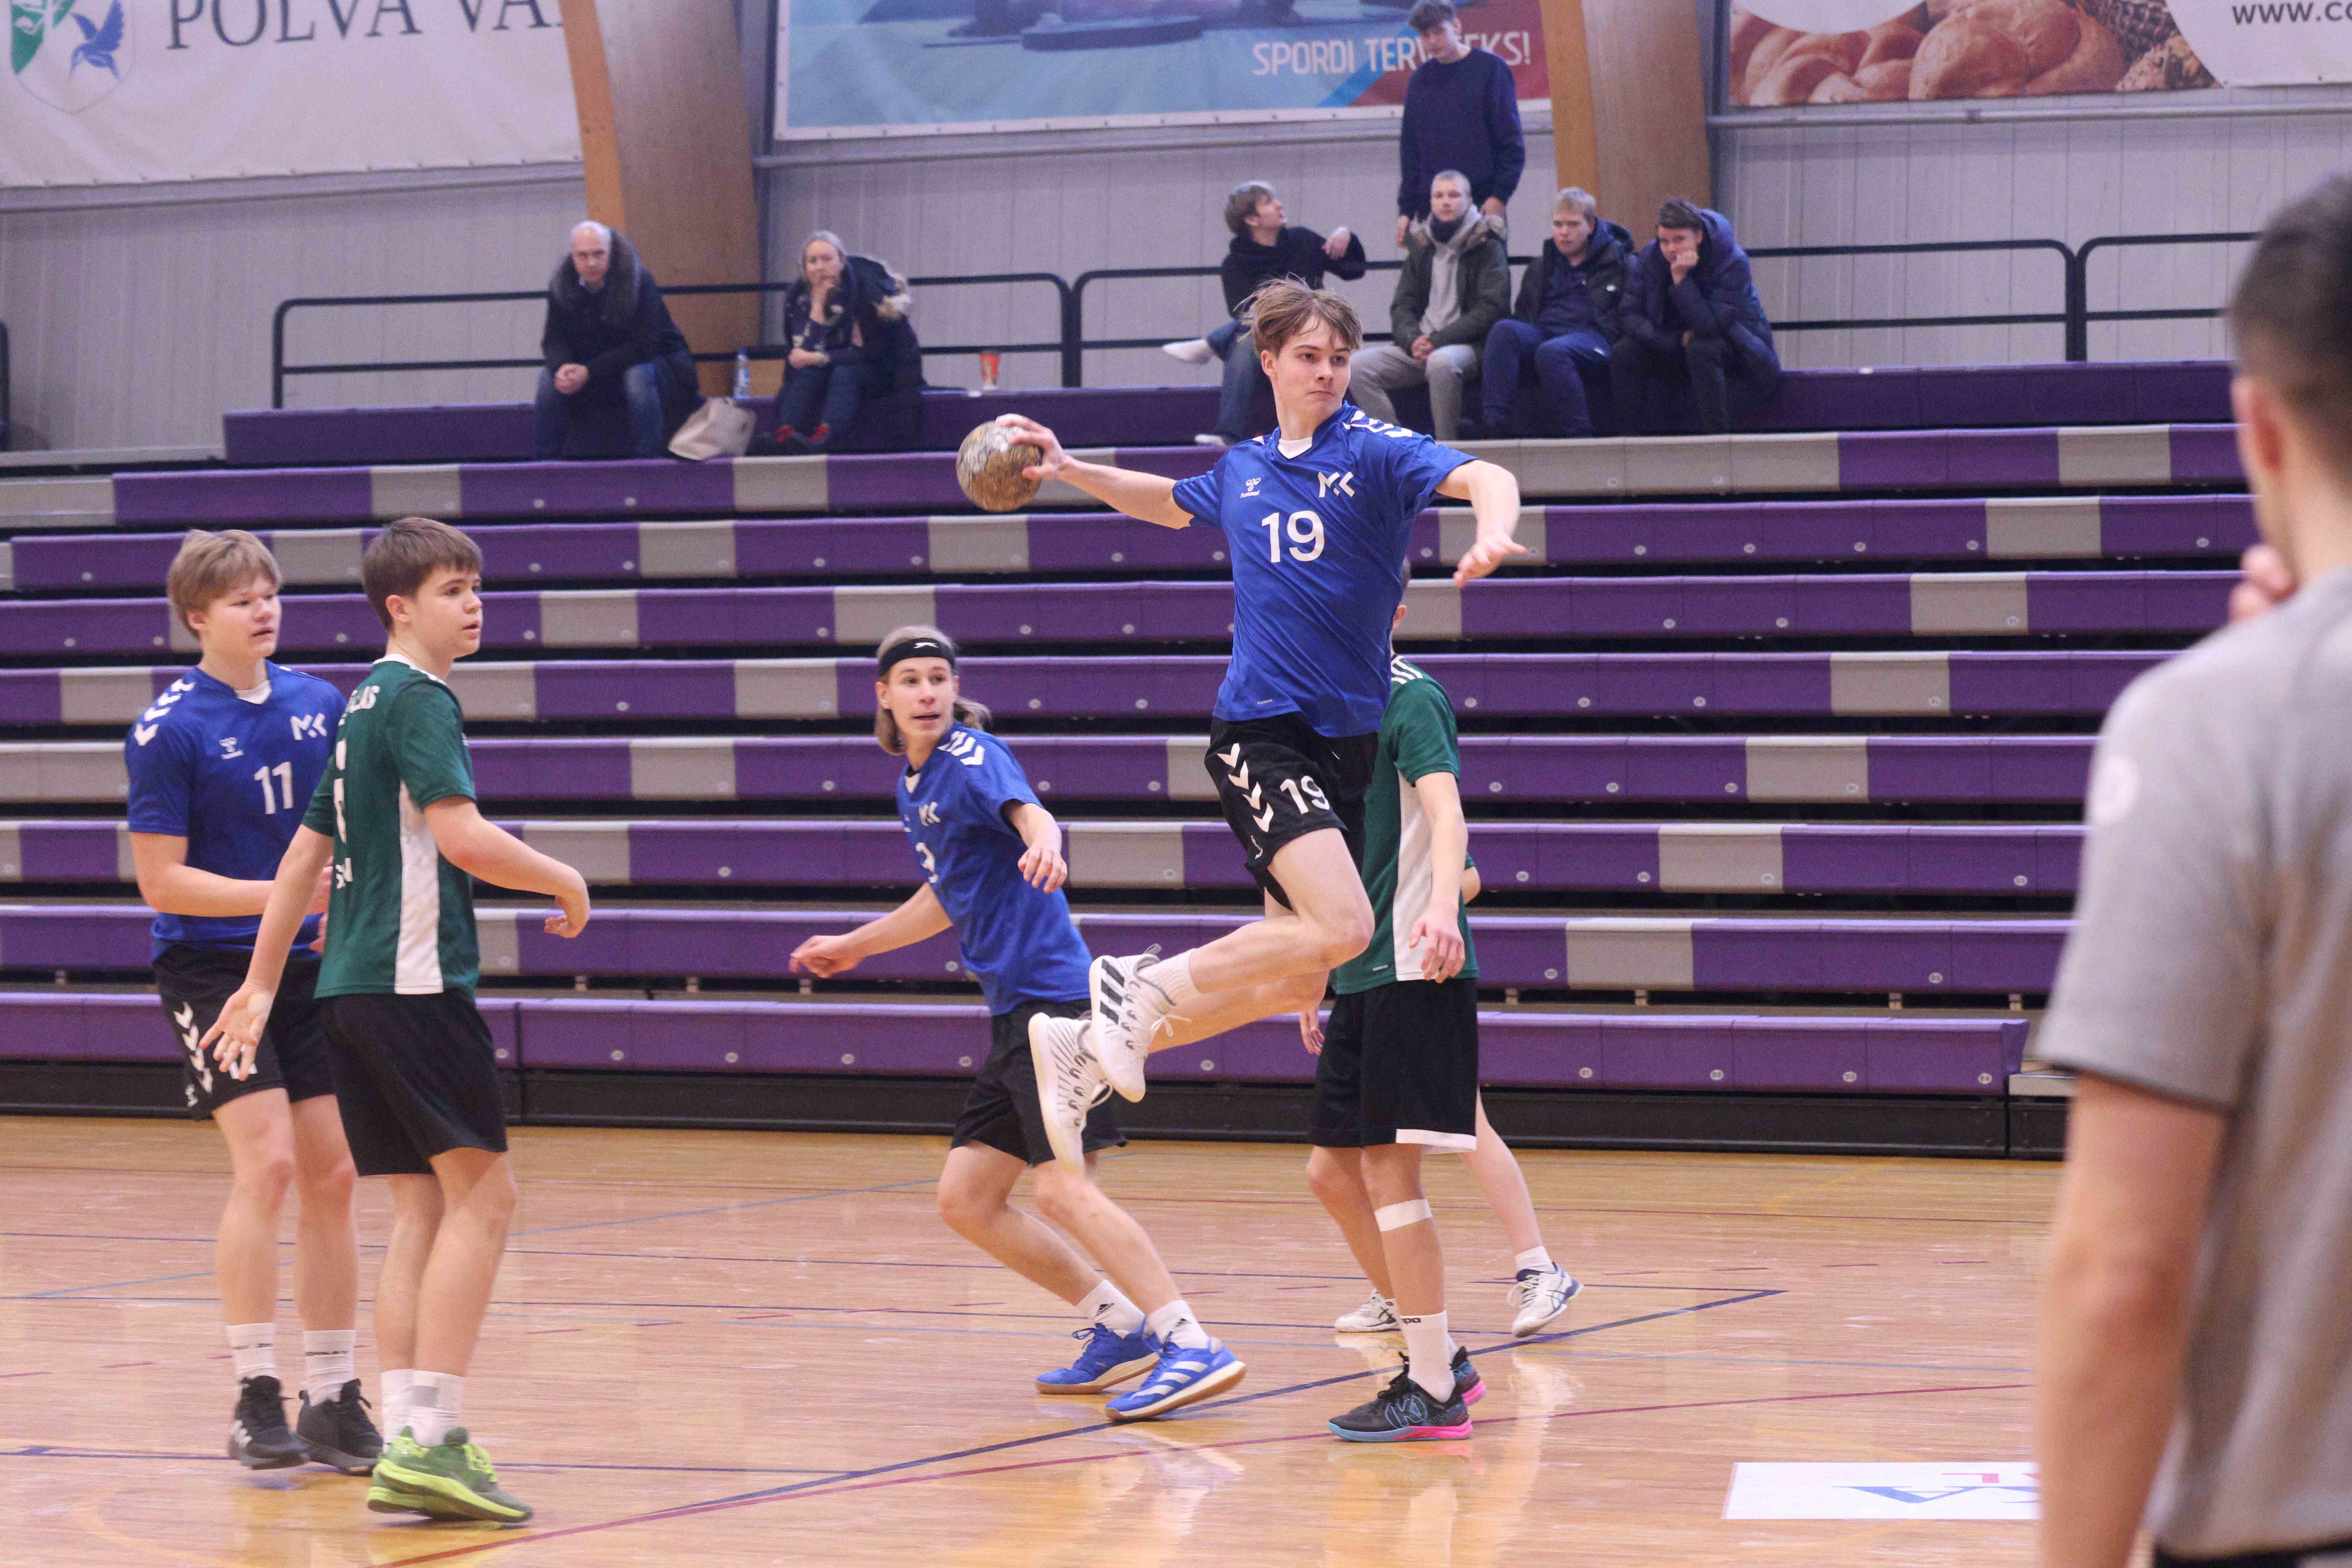 Nädalavahetusel jätkuvad Põlvas noormeeste B2 vanuseklassi 2024 Eesti meistrivõistlused käsipallis II etapi mängudega